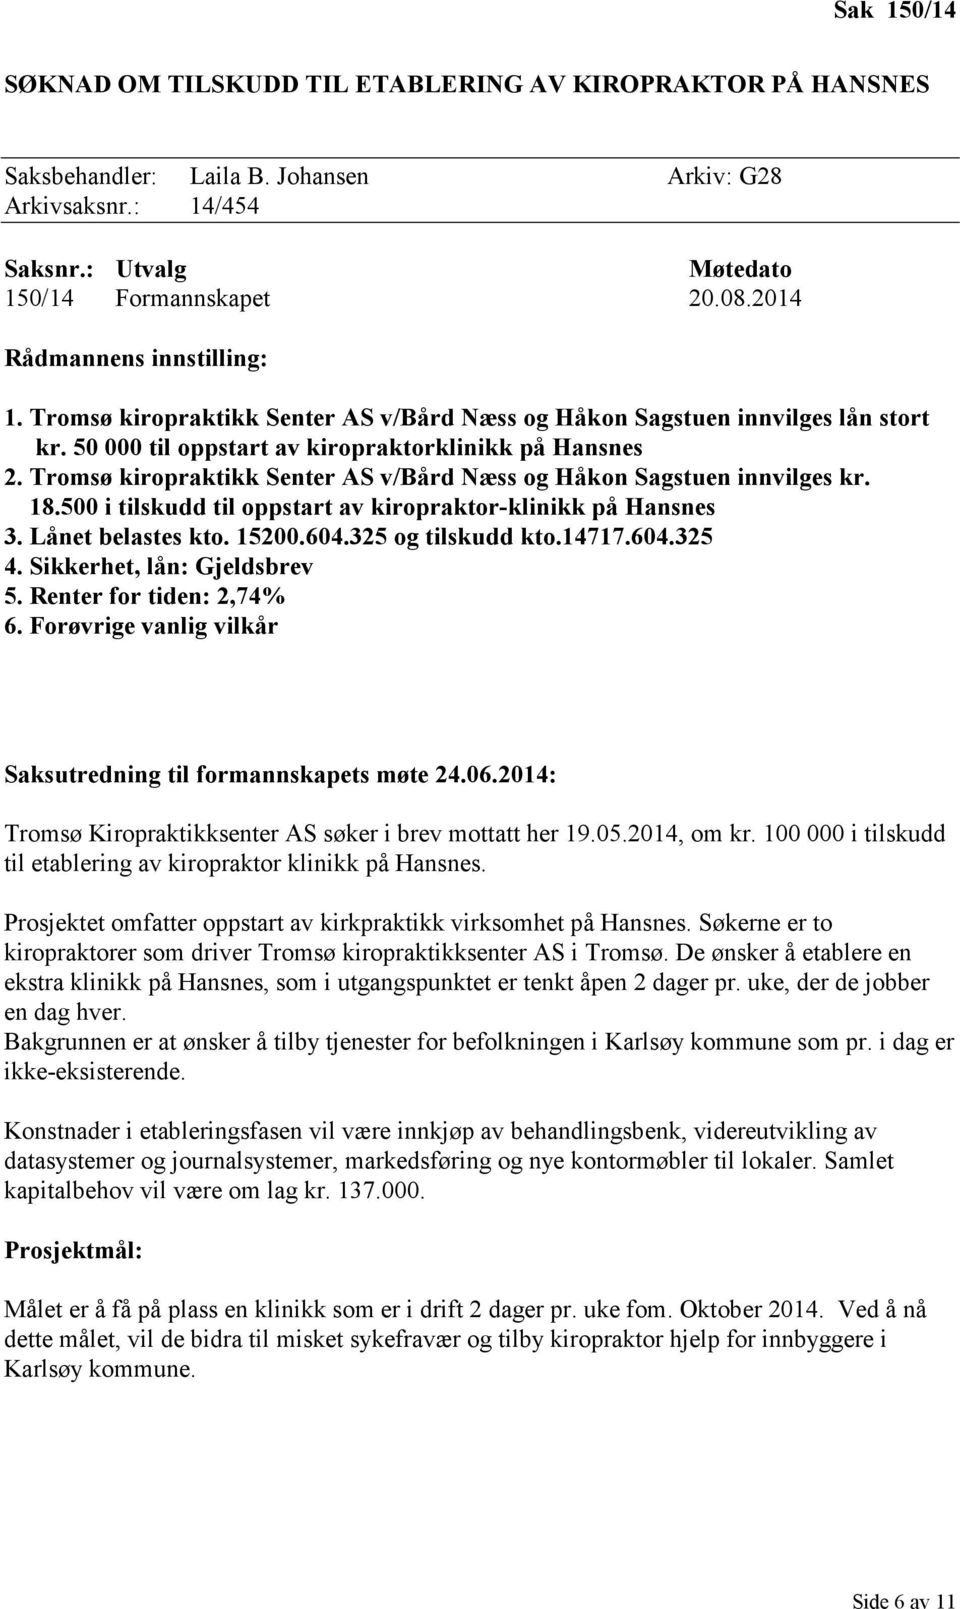 Tromsø kiropraktikk Senter AS v/bård Næss og Håkon Sagstuen innvilges kr. 18.500 i tilskudd til oppstart av kiropraktor-klinikk på Hansnes 3. Lånet belastes kto. 15200.604.325 og tilskudd kto.14717.